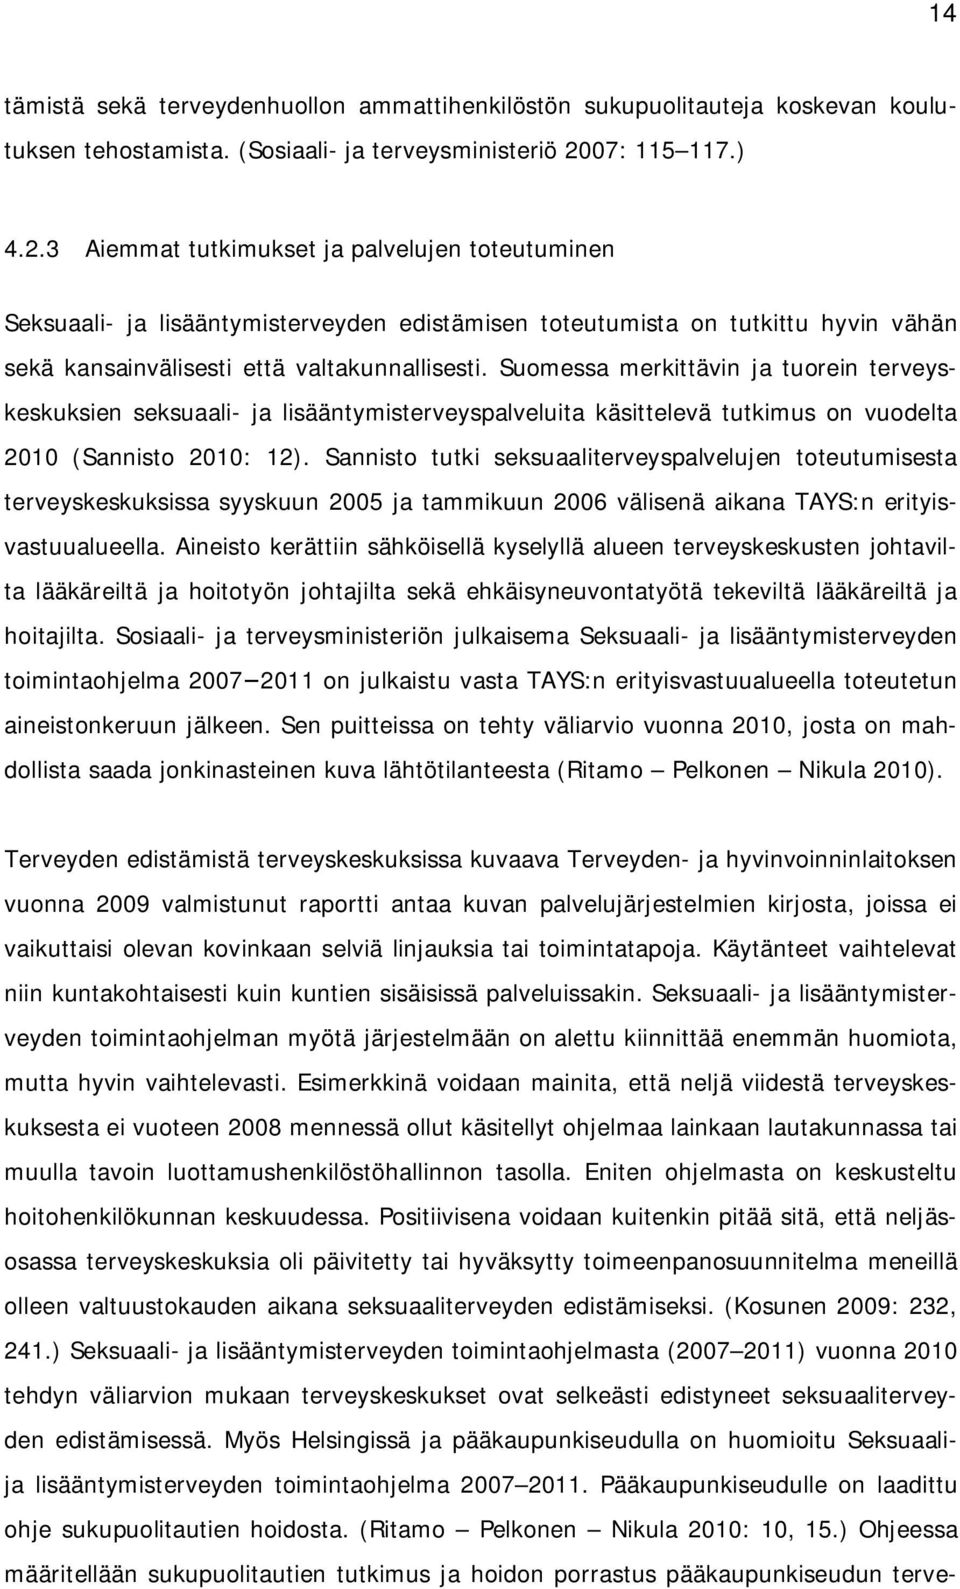 Suomessa merkittävin ja tuorein terveyskeskuksien seksuaali- ja lisääntymisterveyspalveluita käsittelevä tutkimus on vuodelta 2010 (Sannisto 2010: 12).